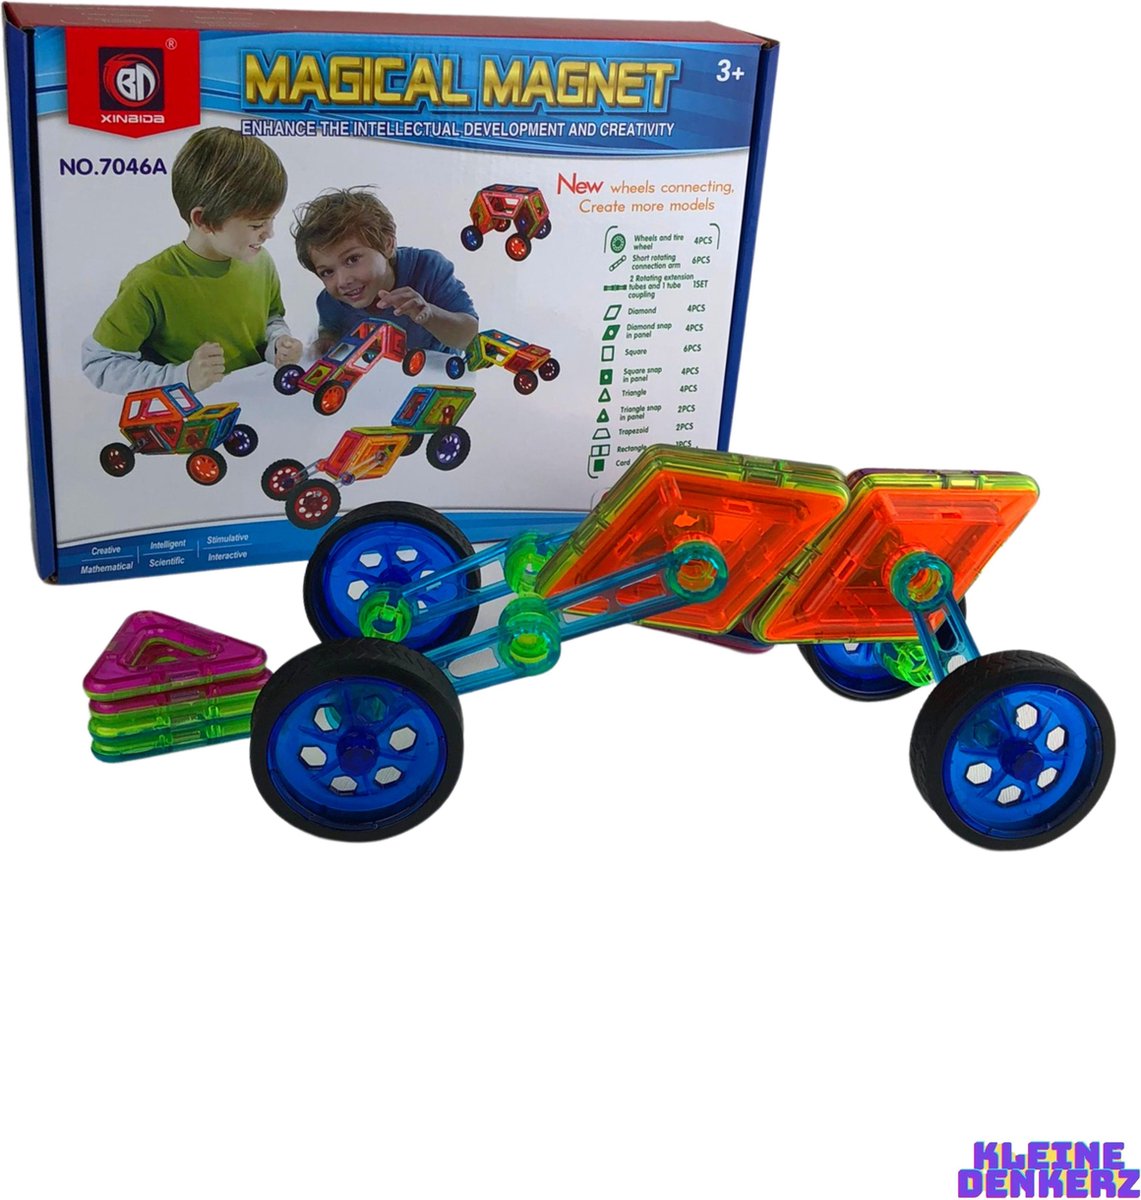 DIY Magnetische Auto Bouwen Puzzel - Bouwset - Bouwvaardigheden - Creatief - Magical Magnet - Magneten - Intellectual - Development - Creative - Creativity - Bouwen - Educatief - Cognitief Denkvermogen - Topcadeaus - Duurzaam - Kleurrijk - Trend - - Merkloos